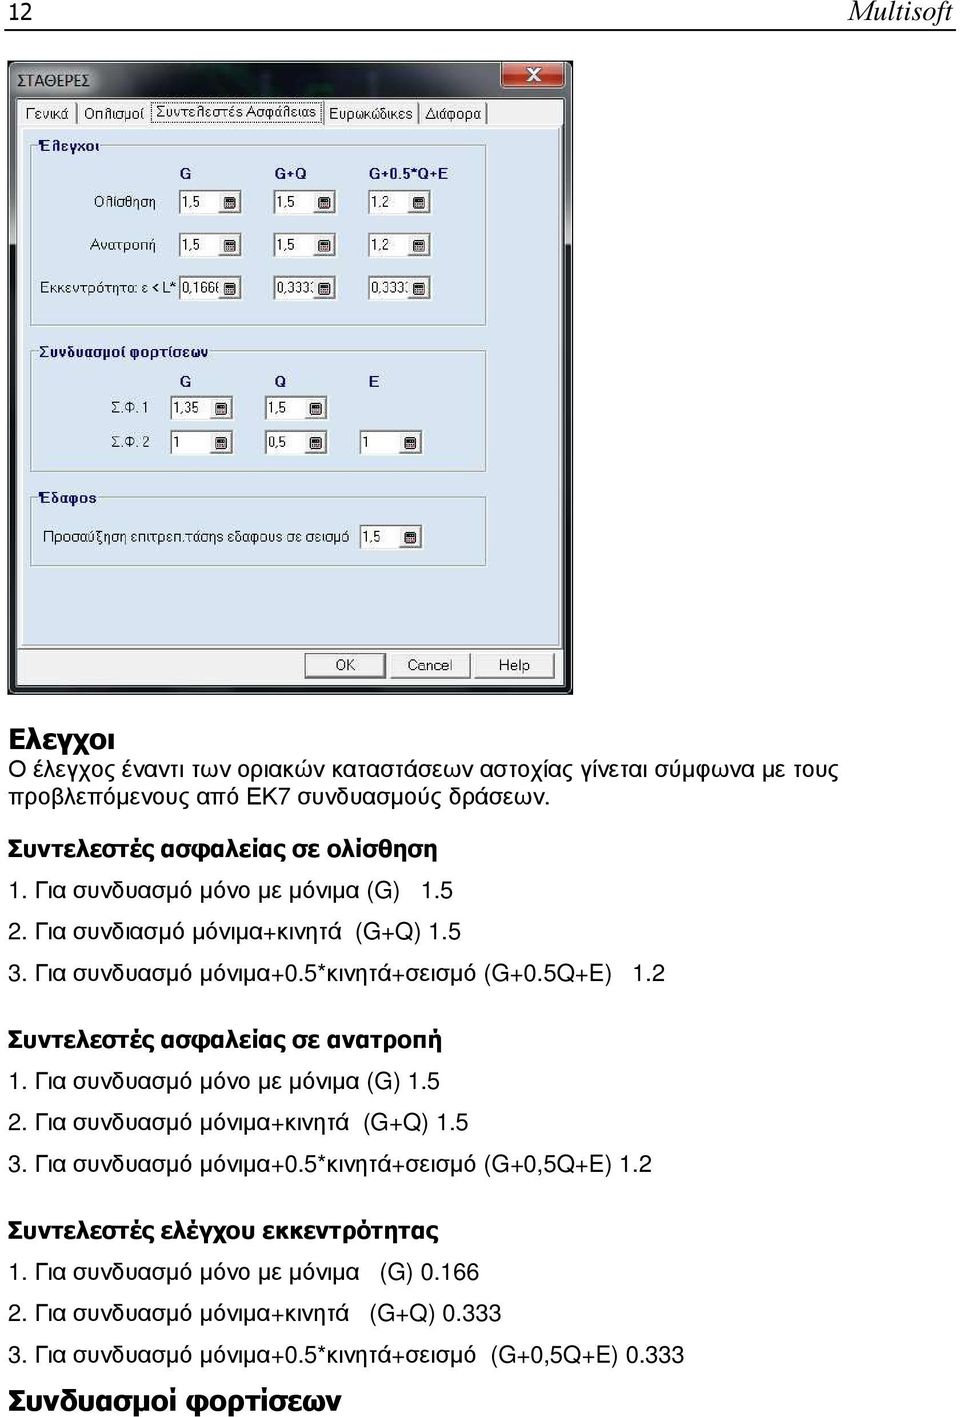 2 Συντελεστές ασφαλείας σε ανατροπή 1. Για συνδυασµό µόνο µε µόνιµα (G) 1.5 2. Για συνδυασµό µόνιµα+κινητά (G+Q) 1.5 3. Για συνδυασµό µόνιµα+0.